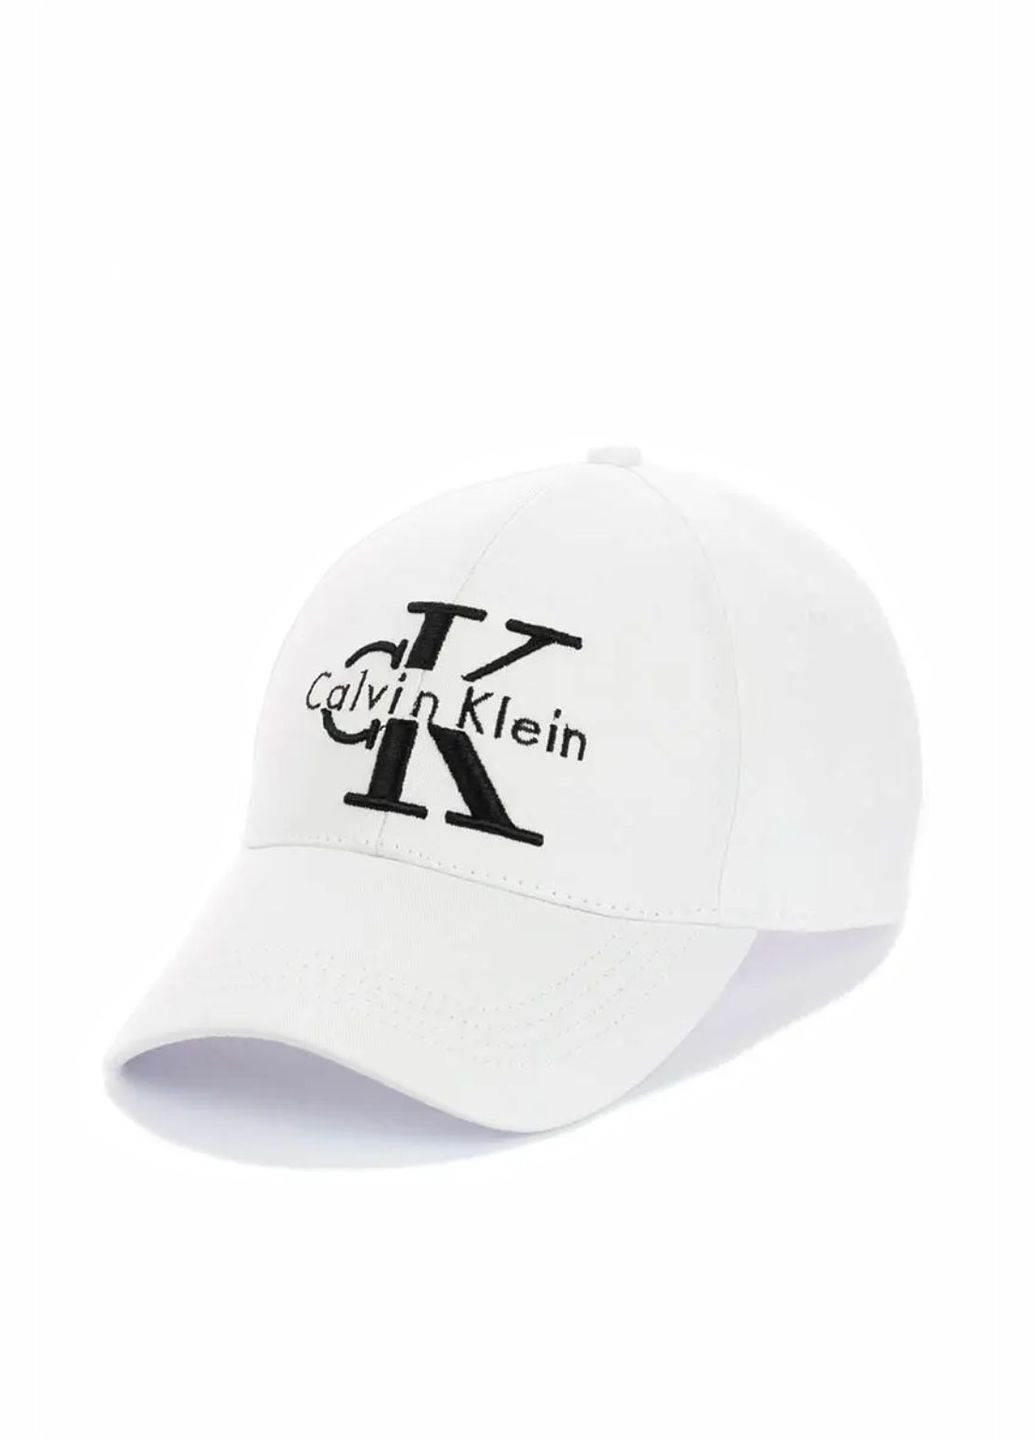 Кепка молодежная Calvin Klein / Кельвин Кляйн S/M No Brand кепка унісекс (280929073)